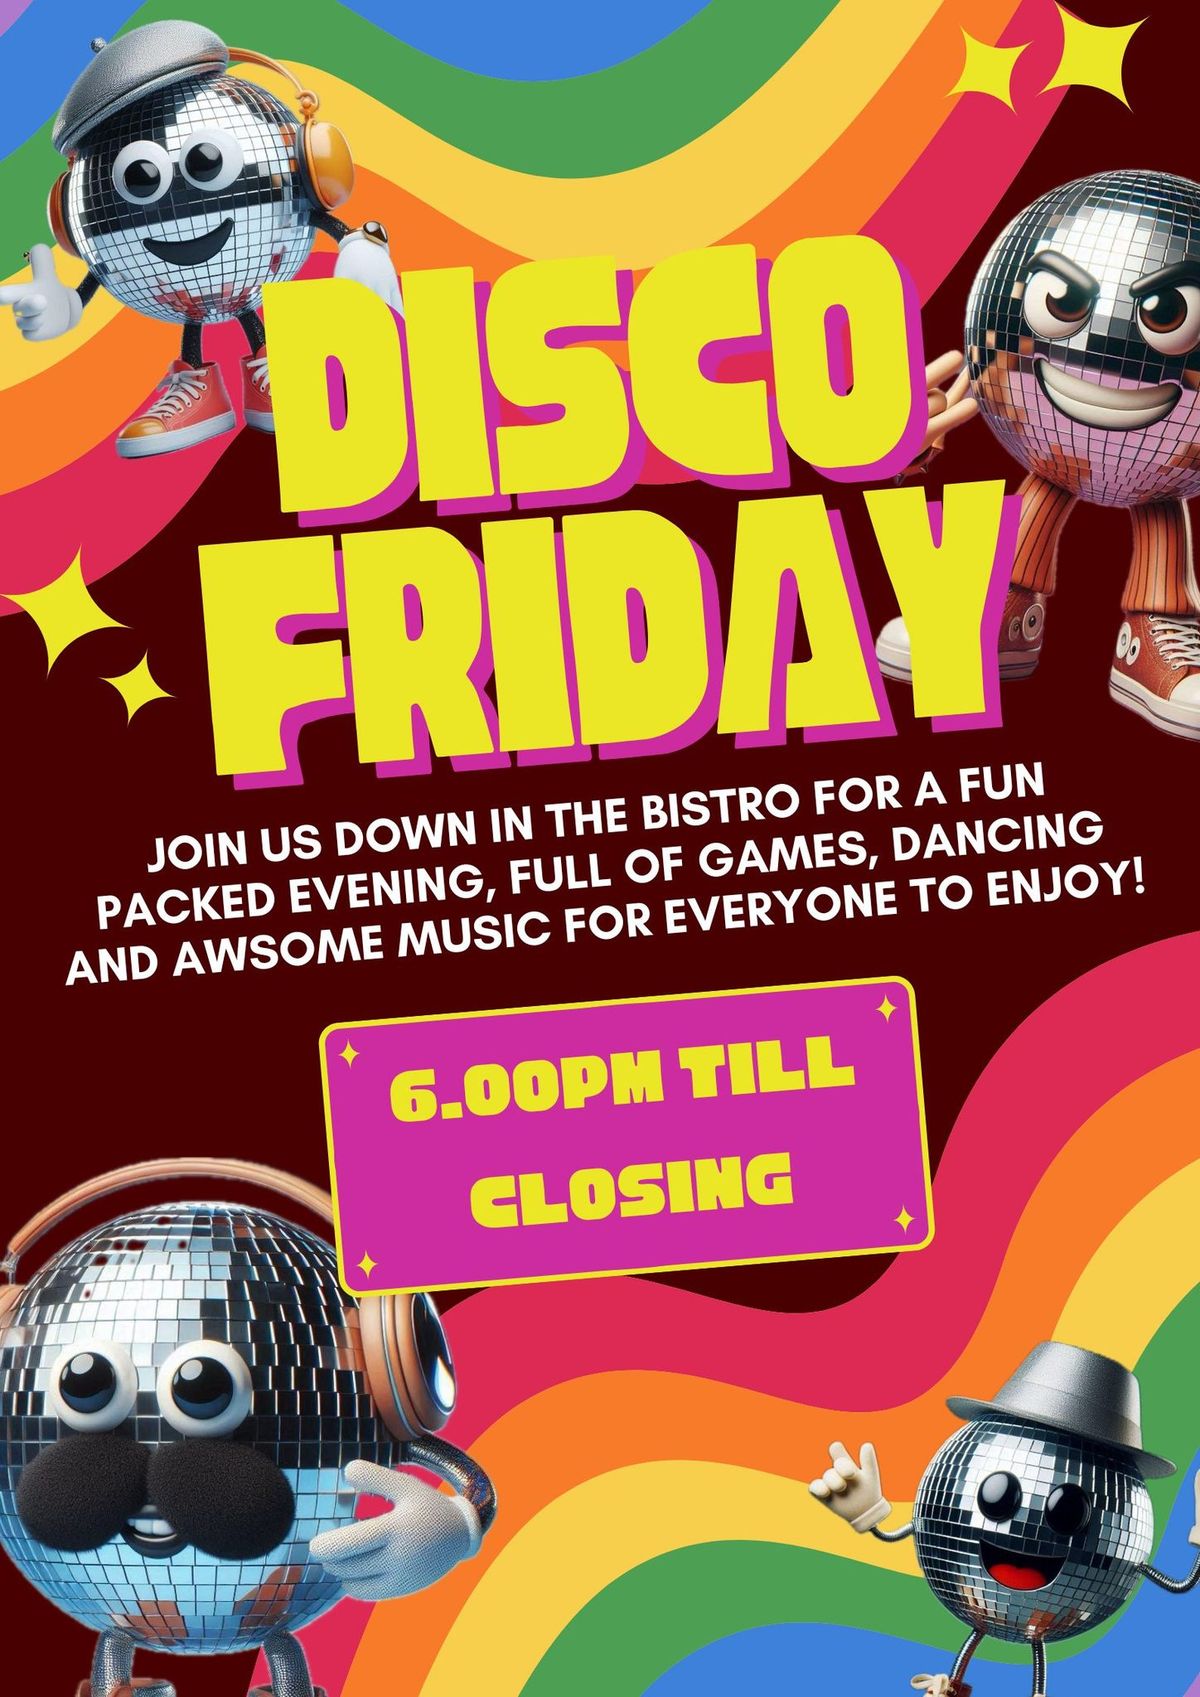 Disco Friday at Piran Meadows